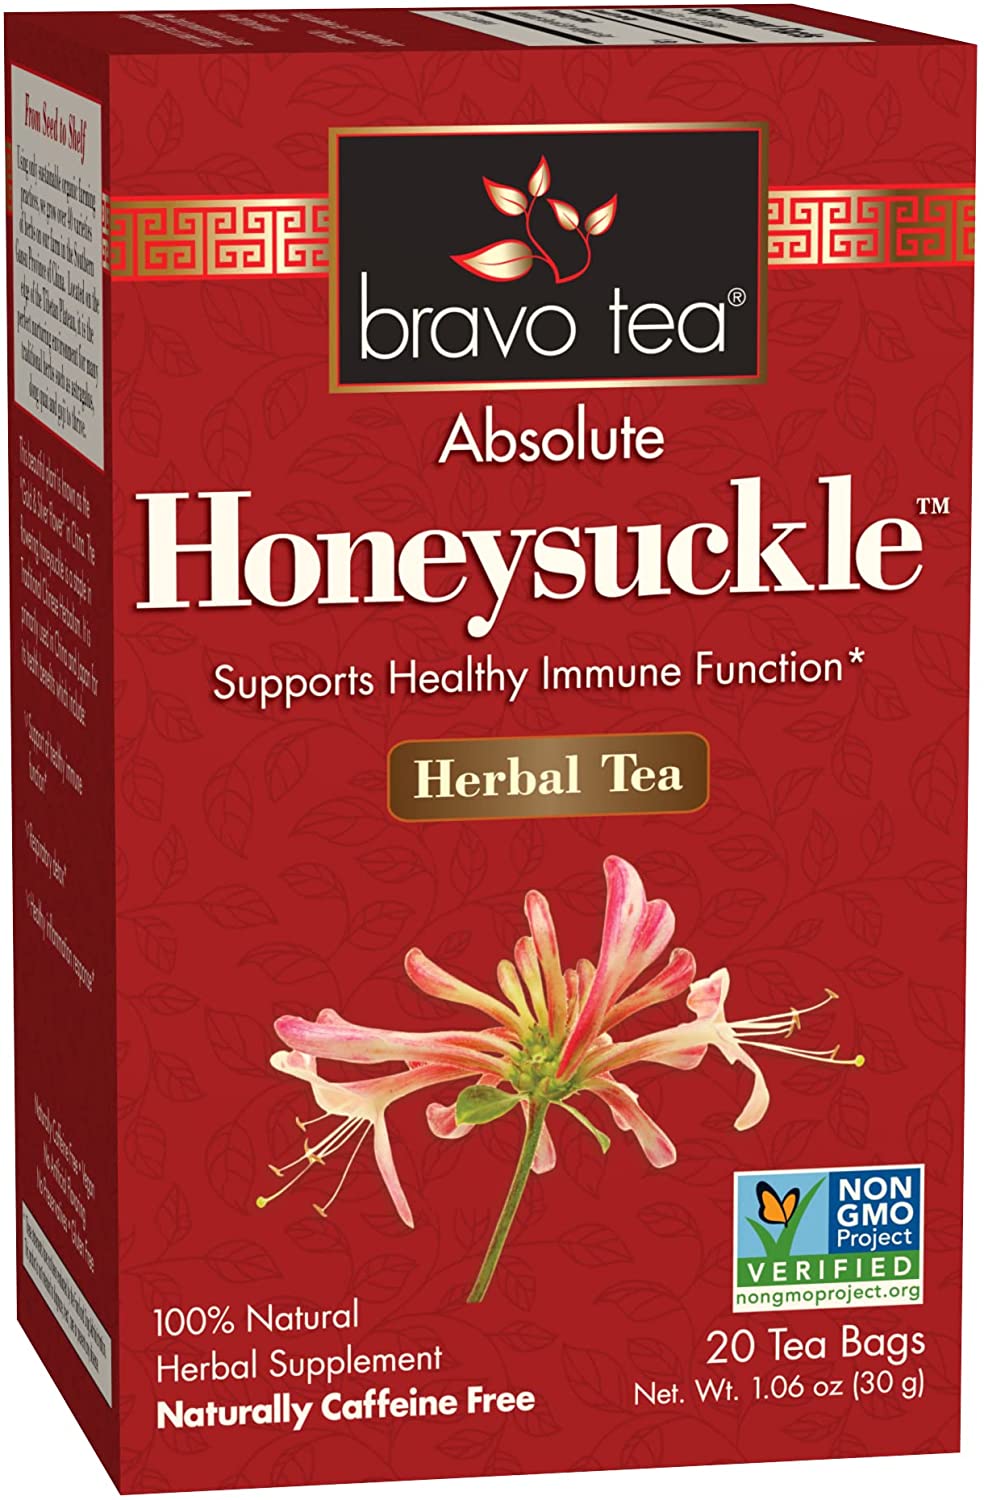 Bravo Tea Absolute Honeysuckle Herbal Tea Bags - 20 Count